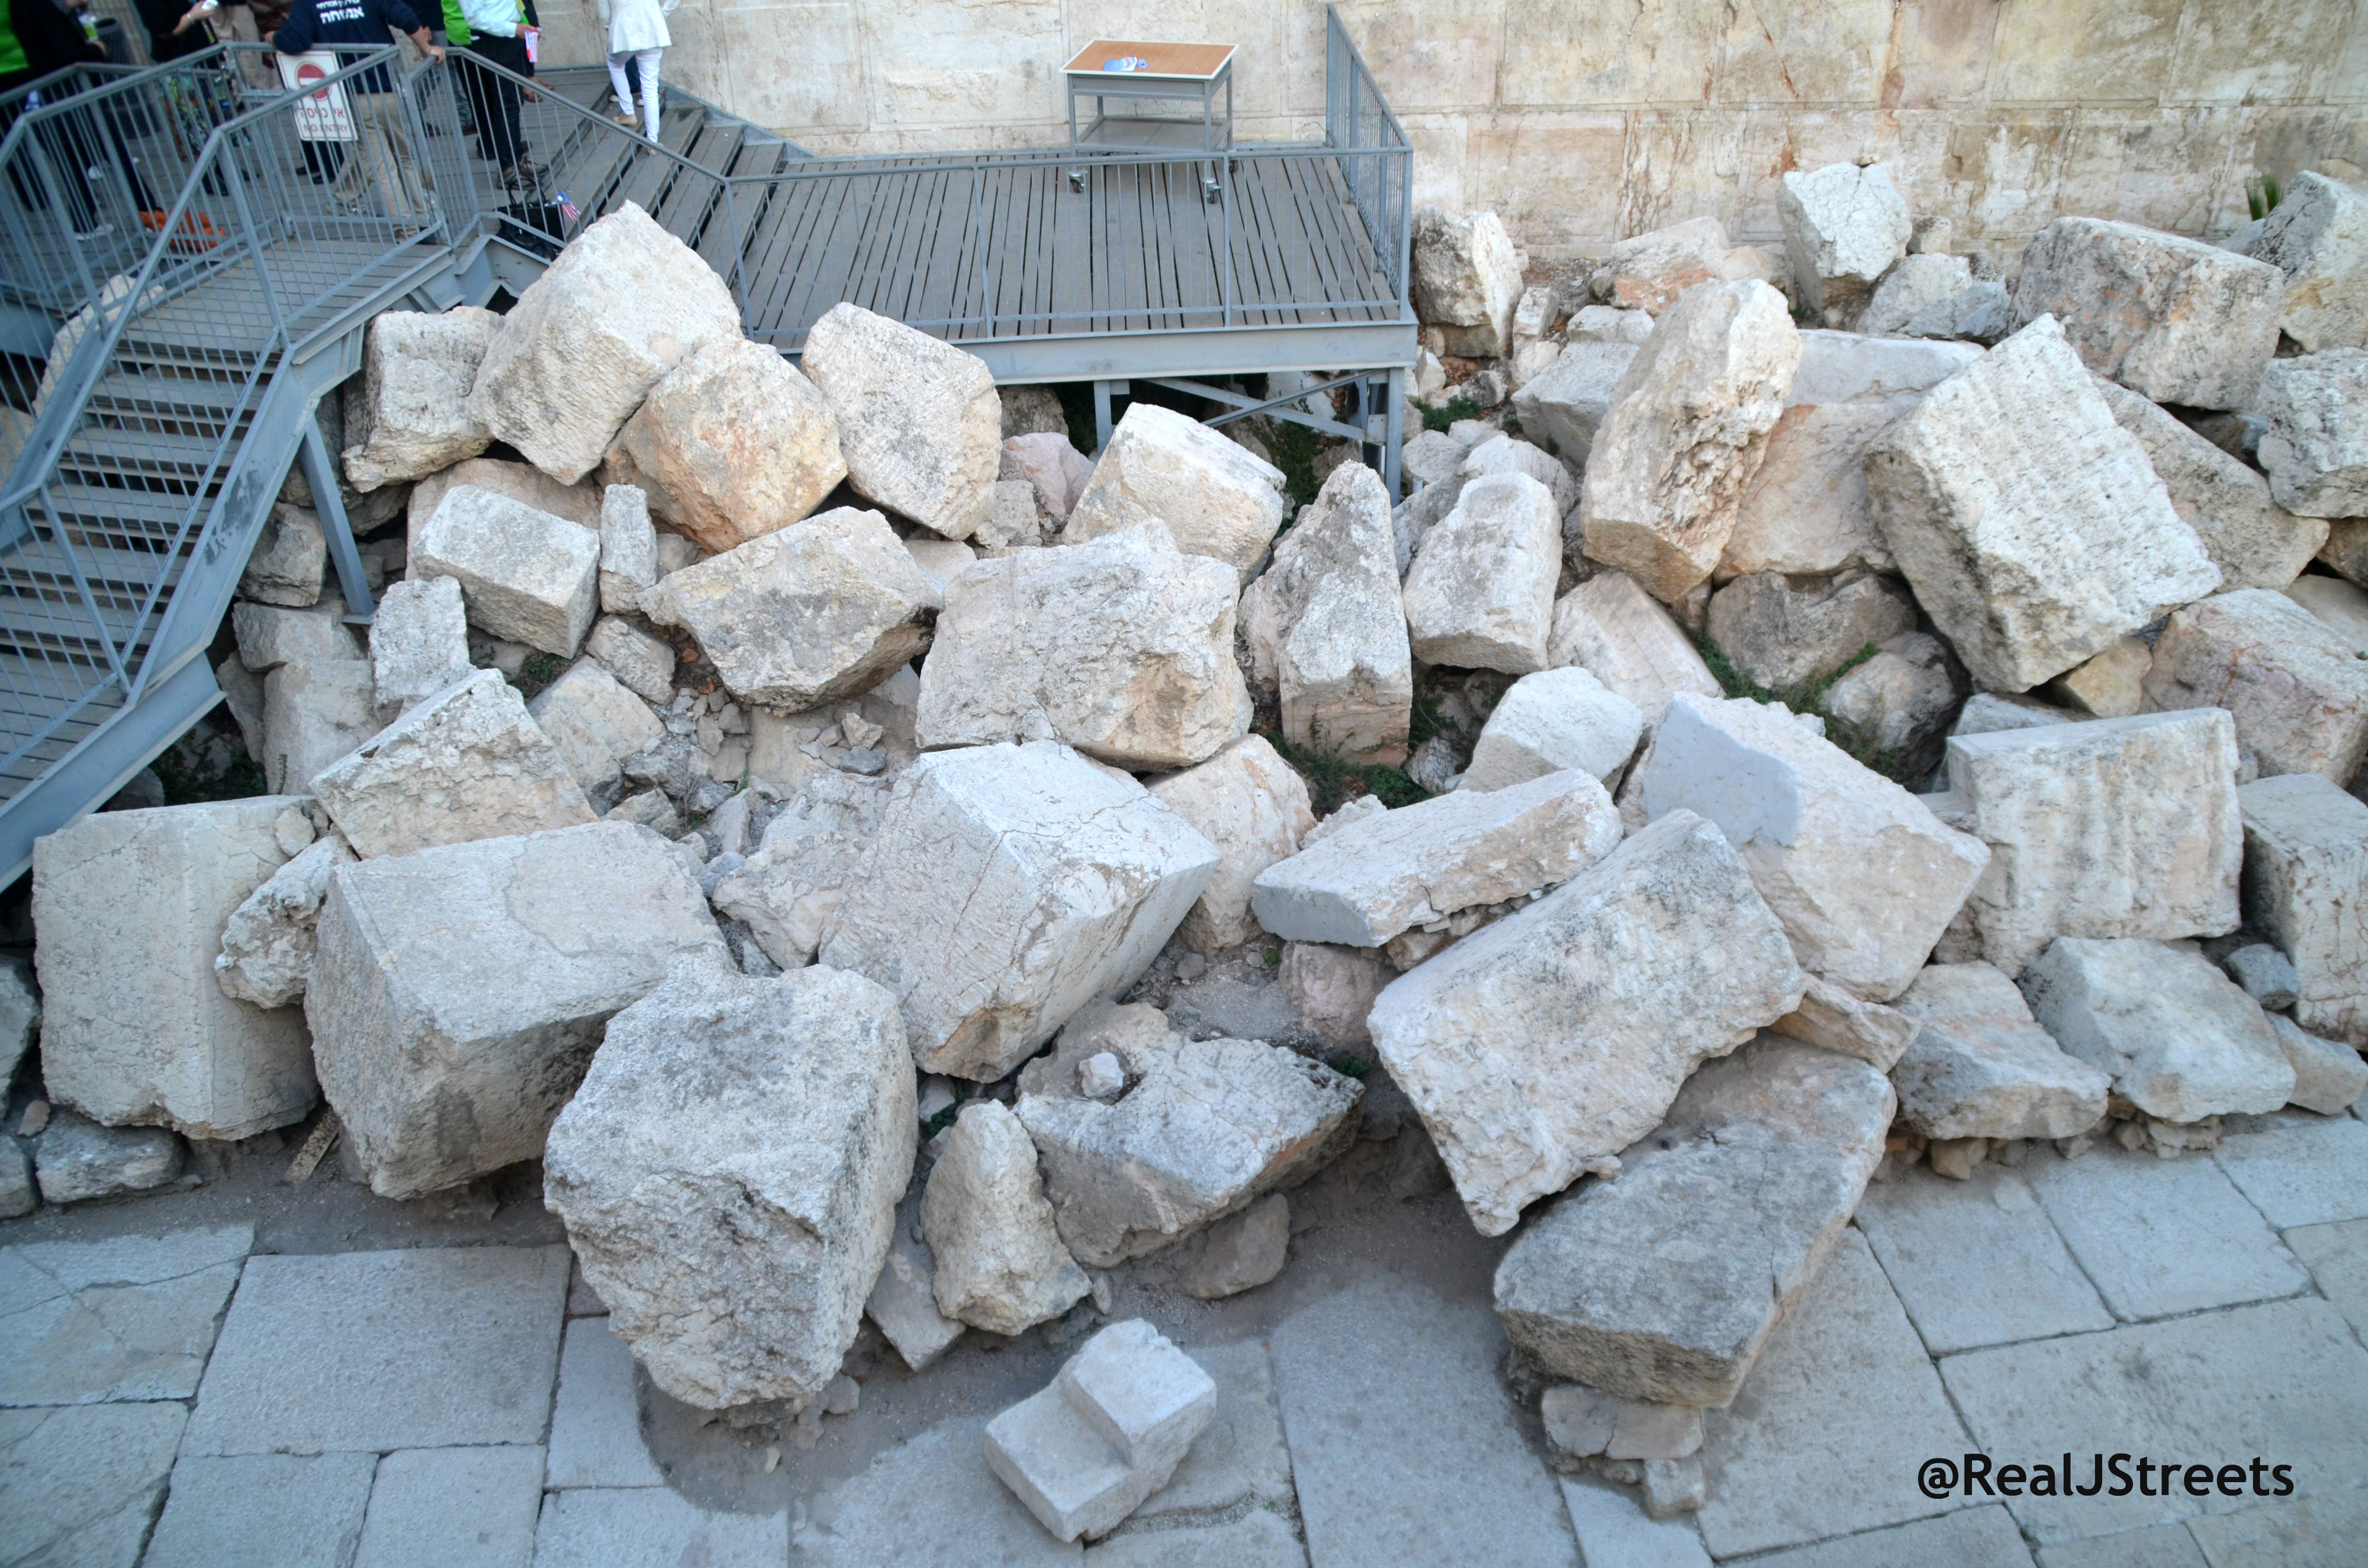 giant stones photo, image large stones near western wall.